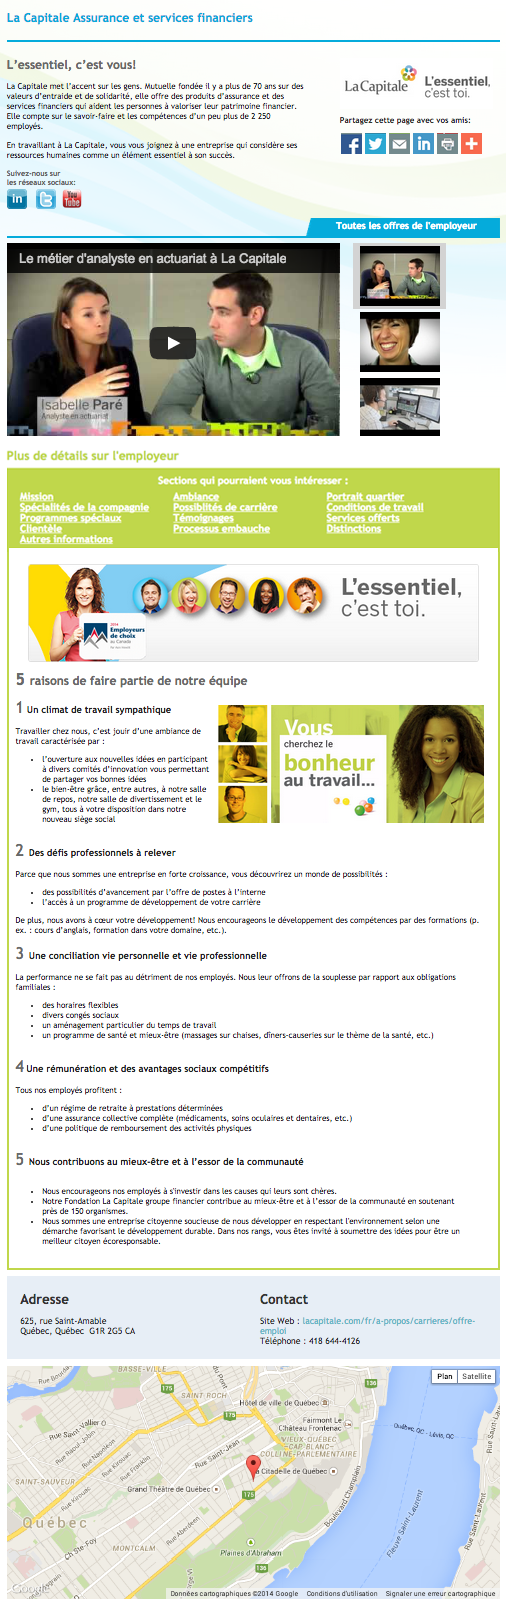 Portail employeur La Capitale Assurance et services financiers - emploisencomptabilite.com